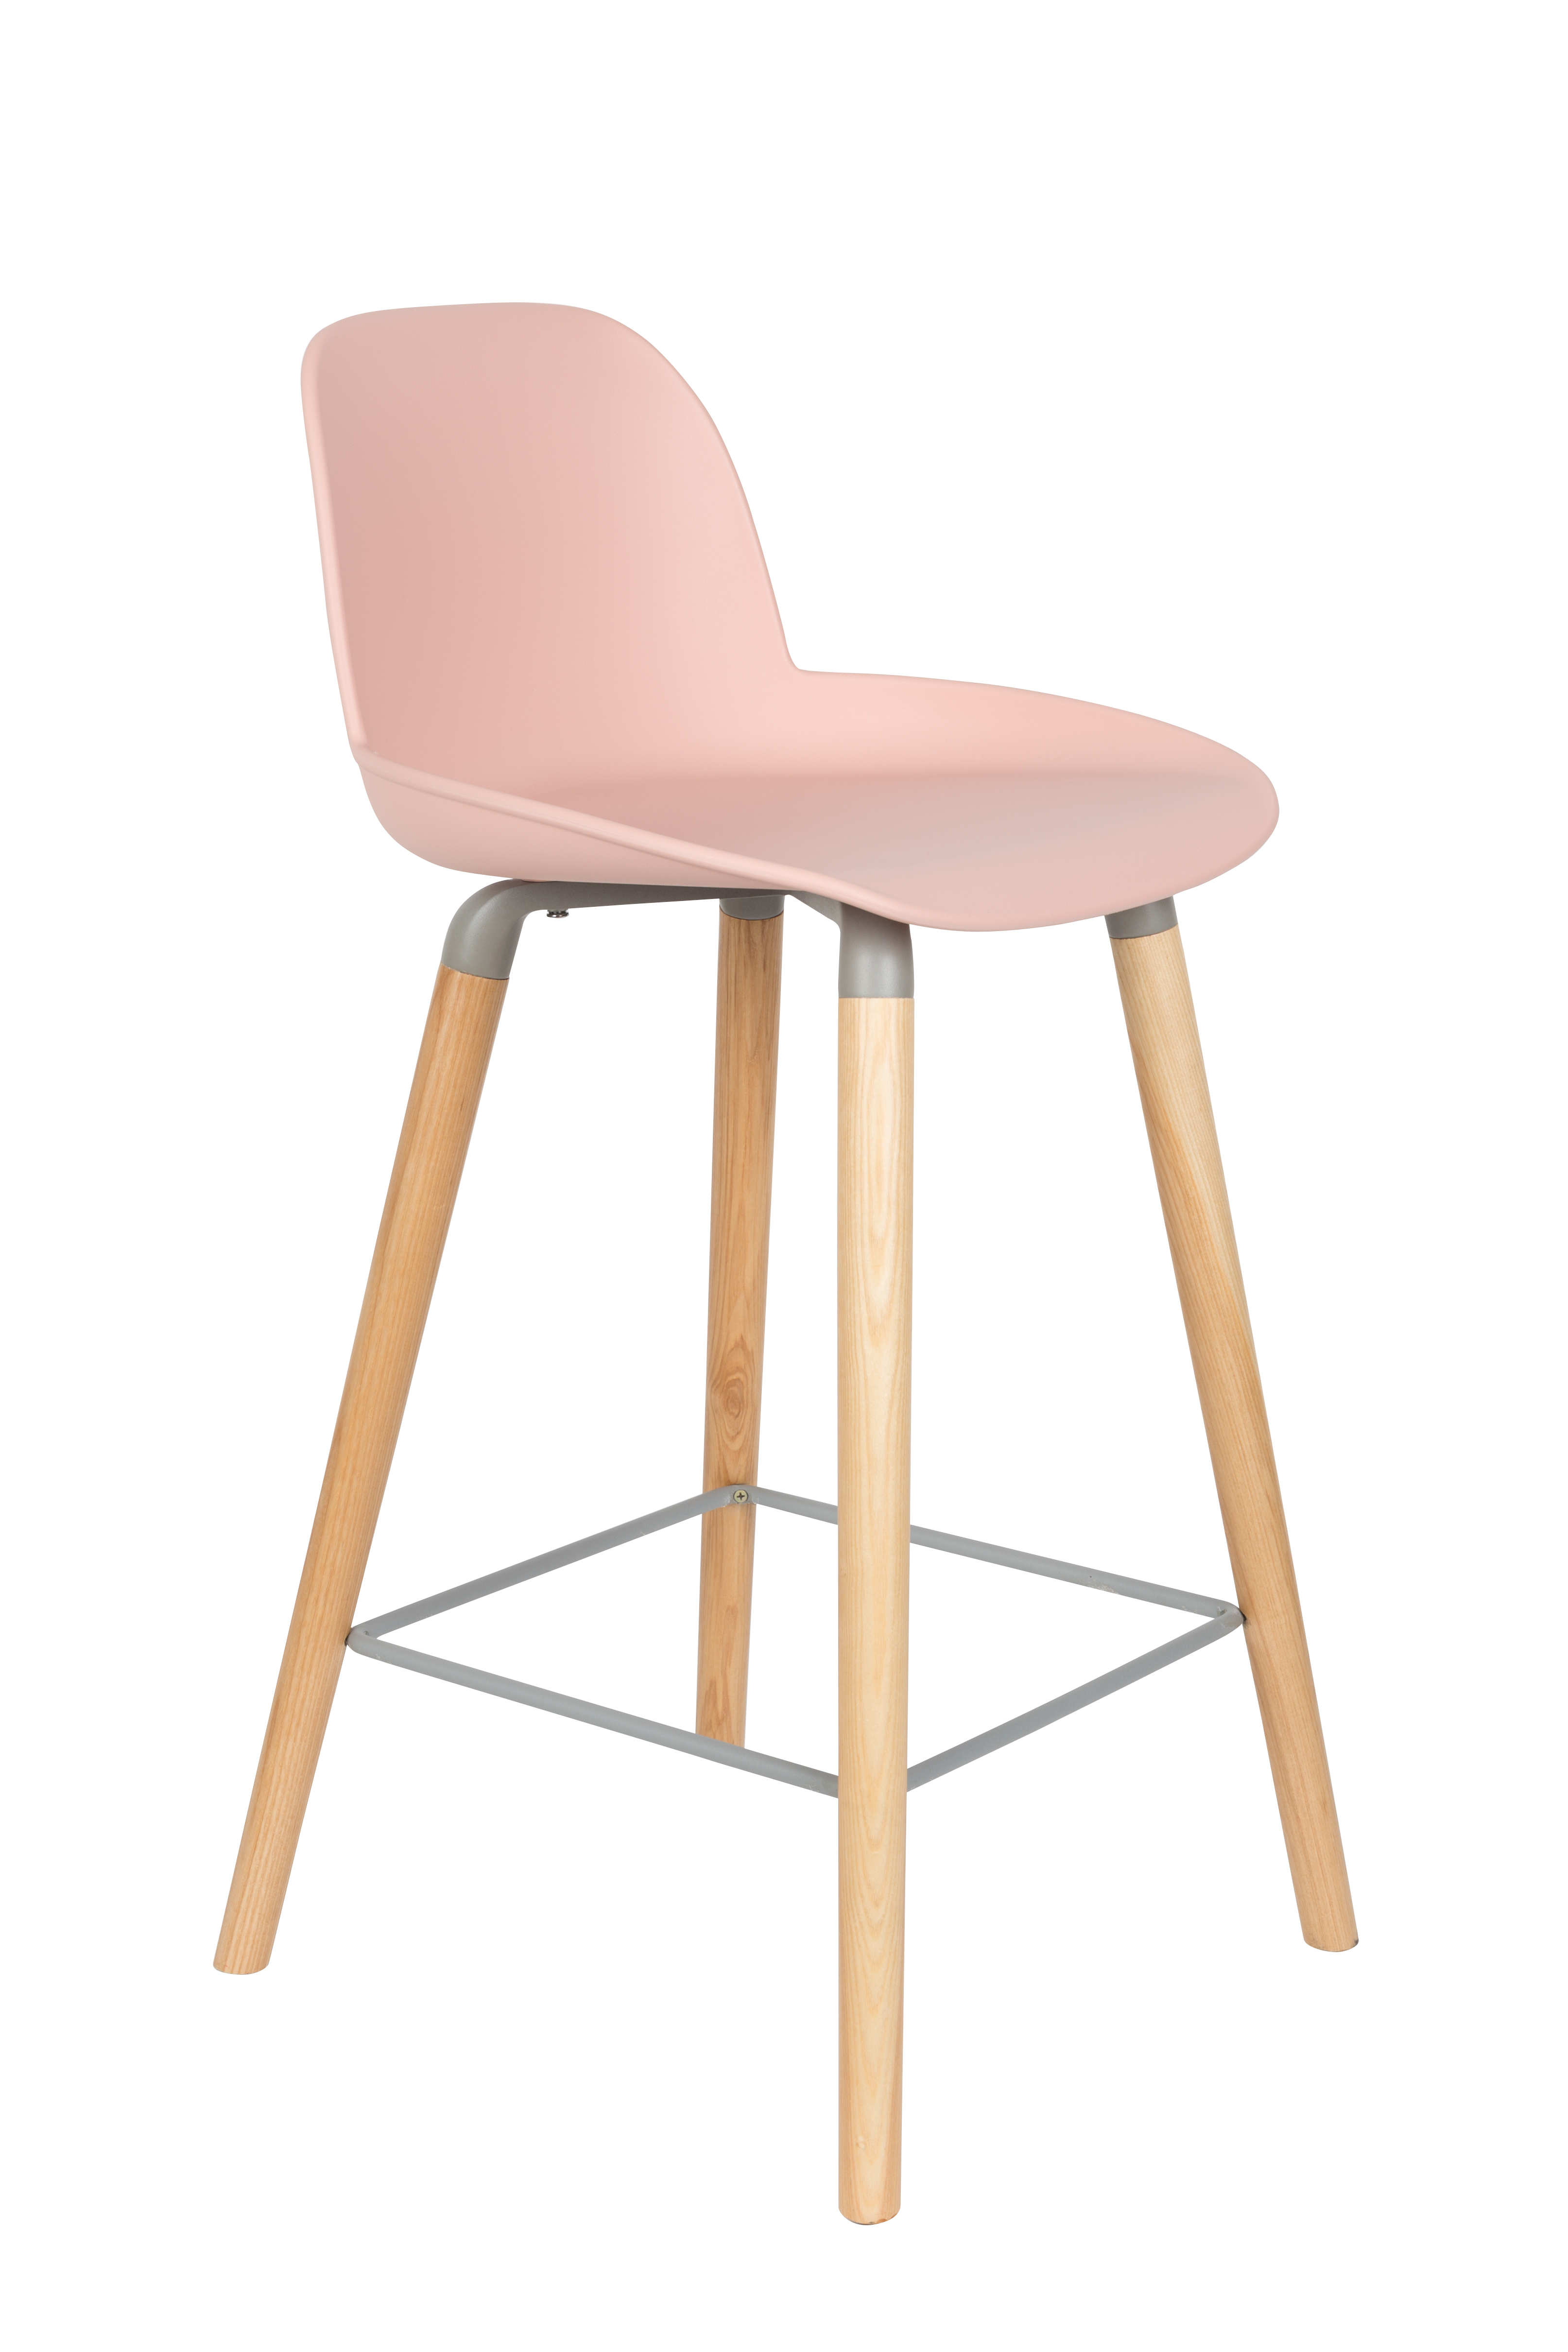 ZUIVER Albert Kuip barstol, m. ryglæn og fodstøtte – lyserød polypropylen/natur ask (65cm)